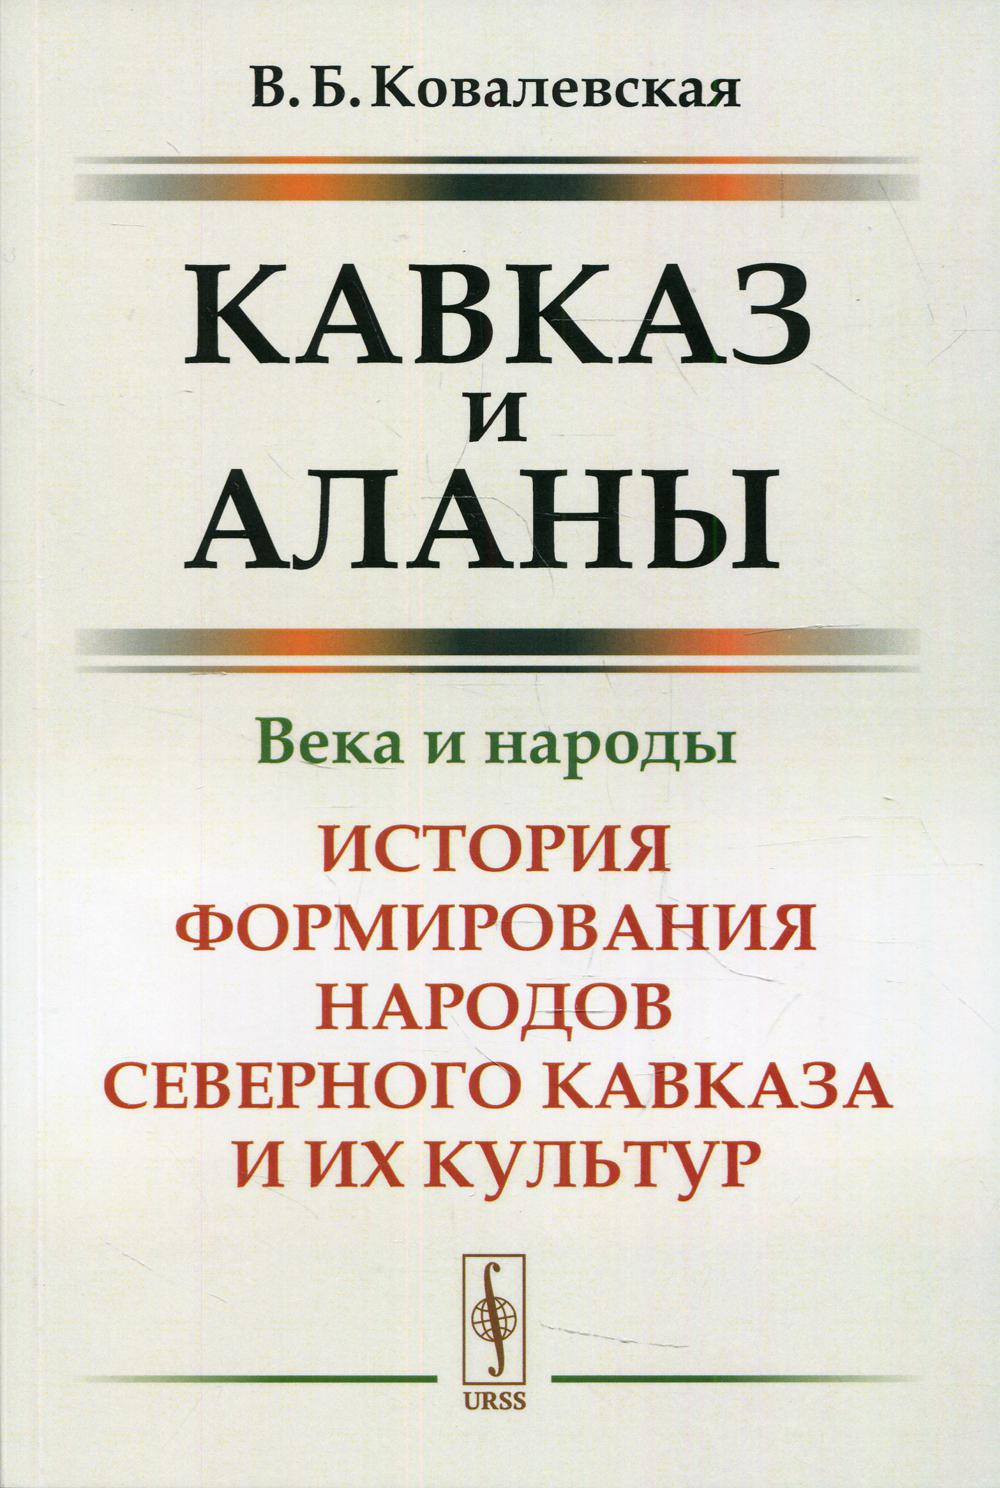 Книга: Народы и личности в истории. том 3 Миронов В.Б 2001г.